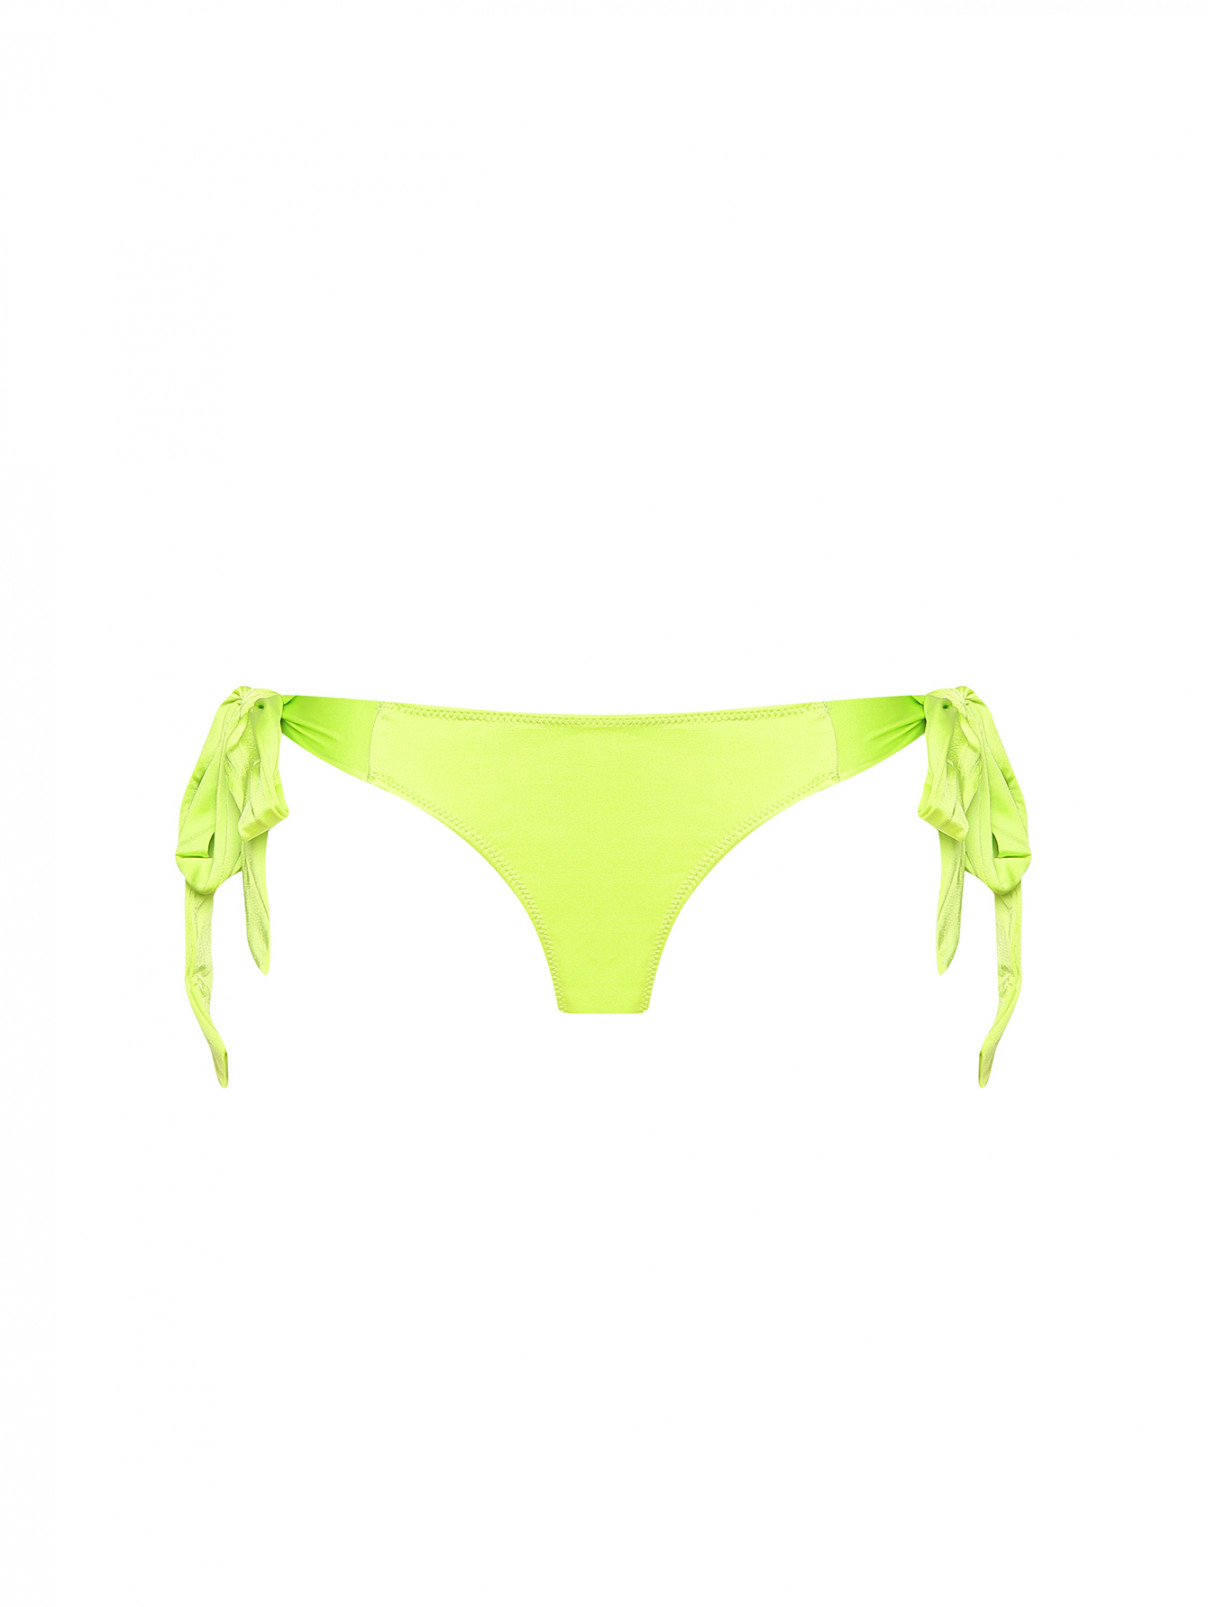 Купальник низ однотонный Frankies Bikinis  –  Общий вид  – Цвет:  Зеленый